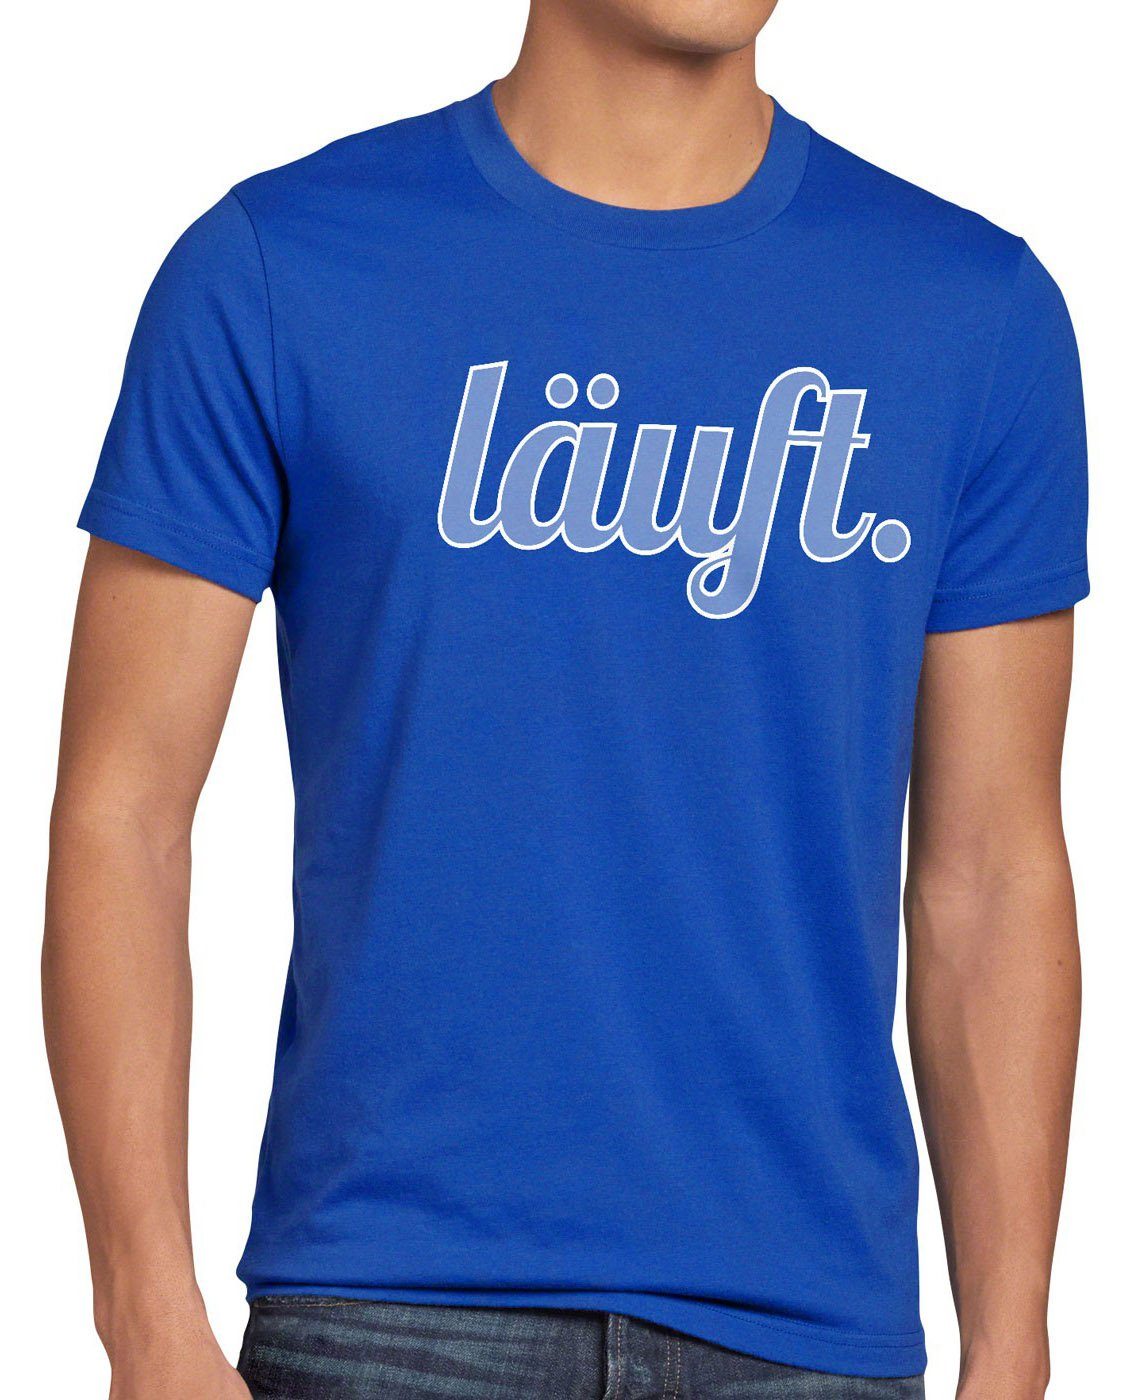 style3 Print-Shirt Herren T-Shirt läuft Funshirt Spruchshirt Shirt Fun bei dir meme kult mir top blau